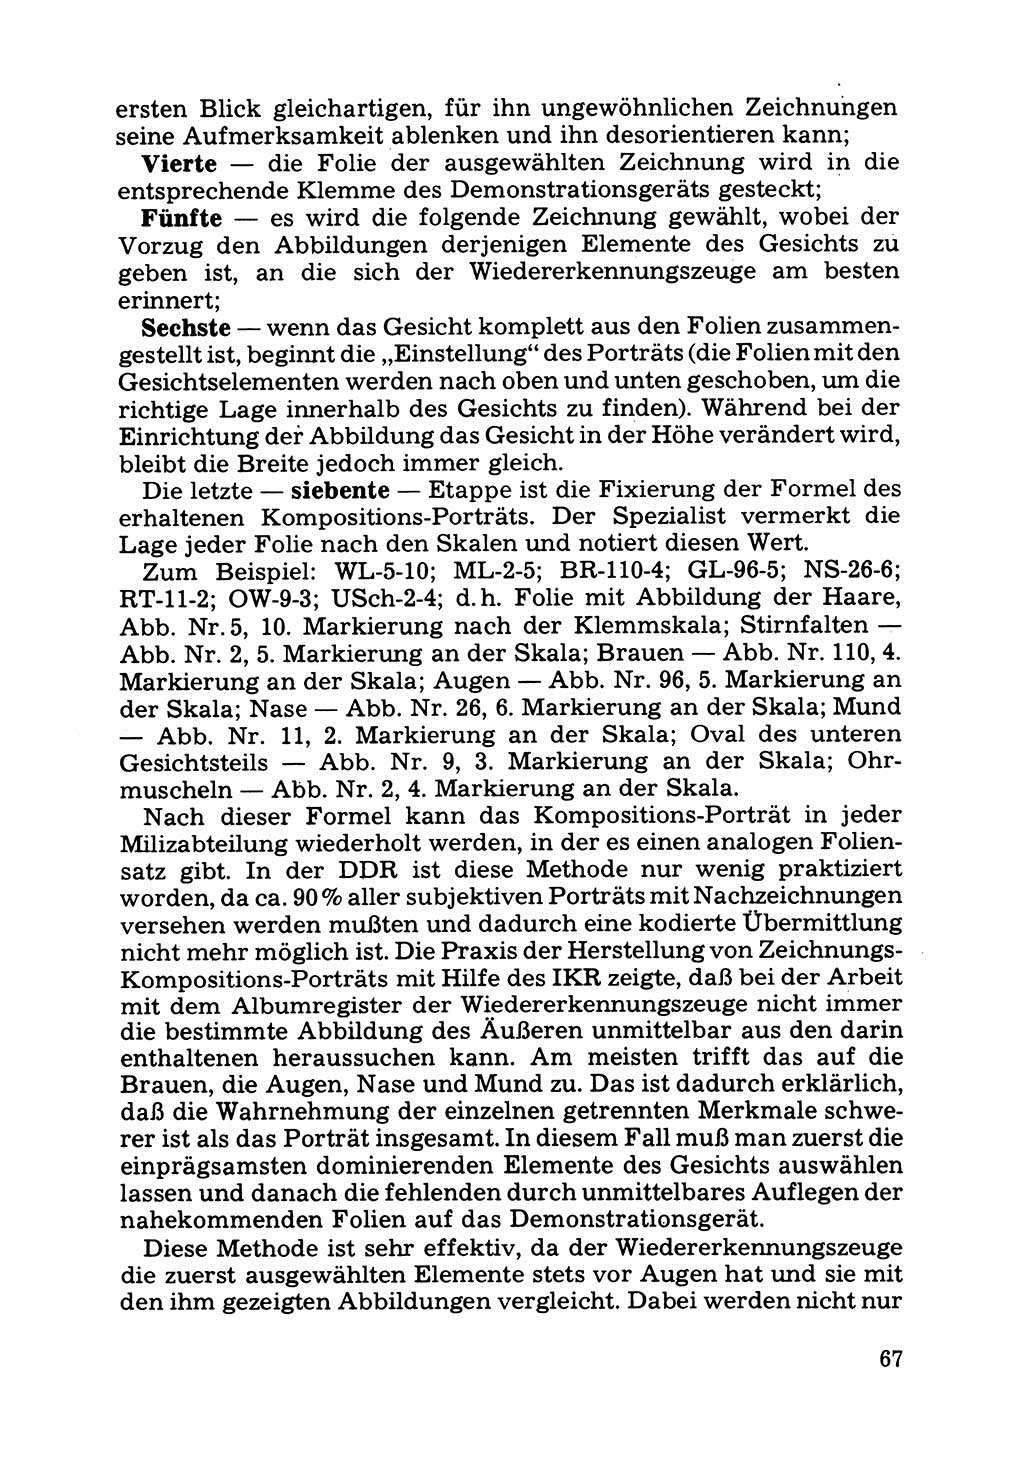 Das subjektive Porträt [Deutsche Demokratische Republik (DDR)] 1981, Seite 67 (Subj. Port. DDR 1981, S. 67)